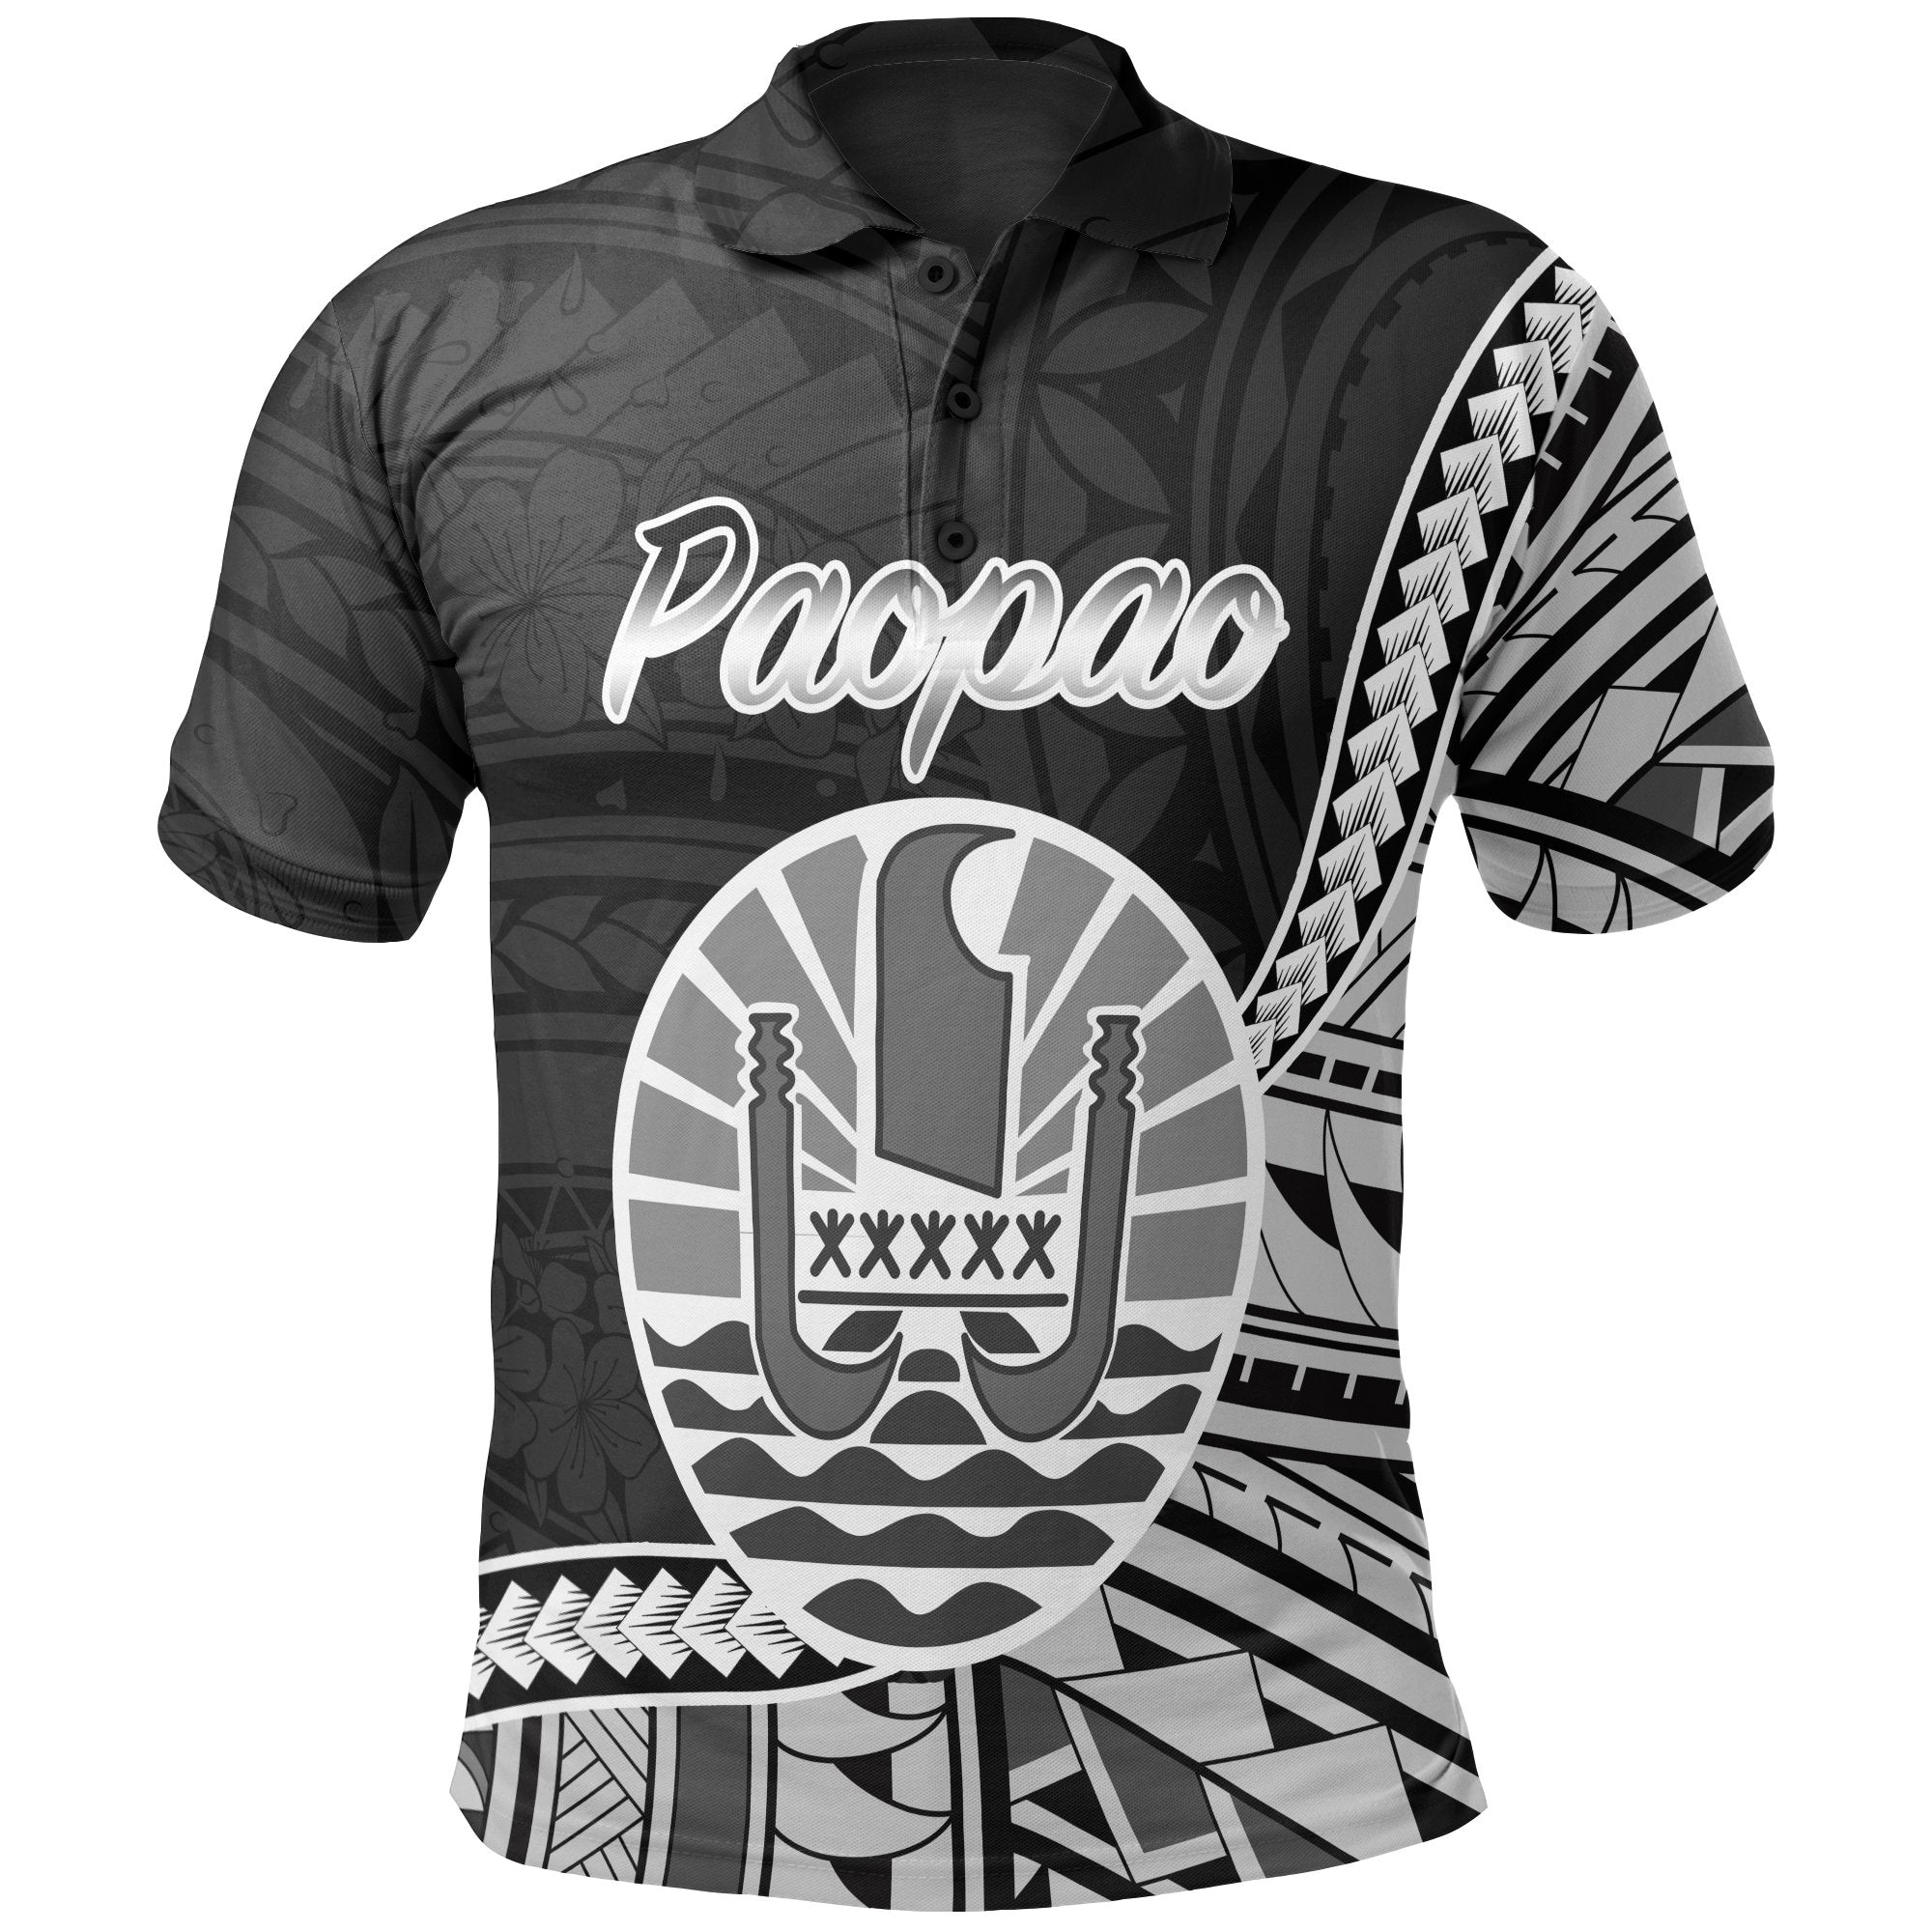 French Polynesia Polo Shirt Paopao Seal Of French Polynesia Polynesian Patterns Unisex Black - Polynesian Pride